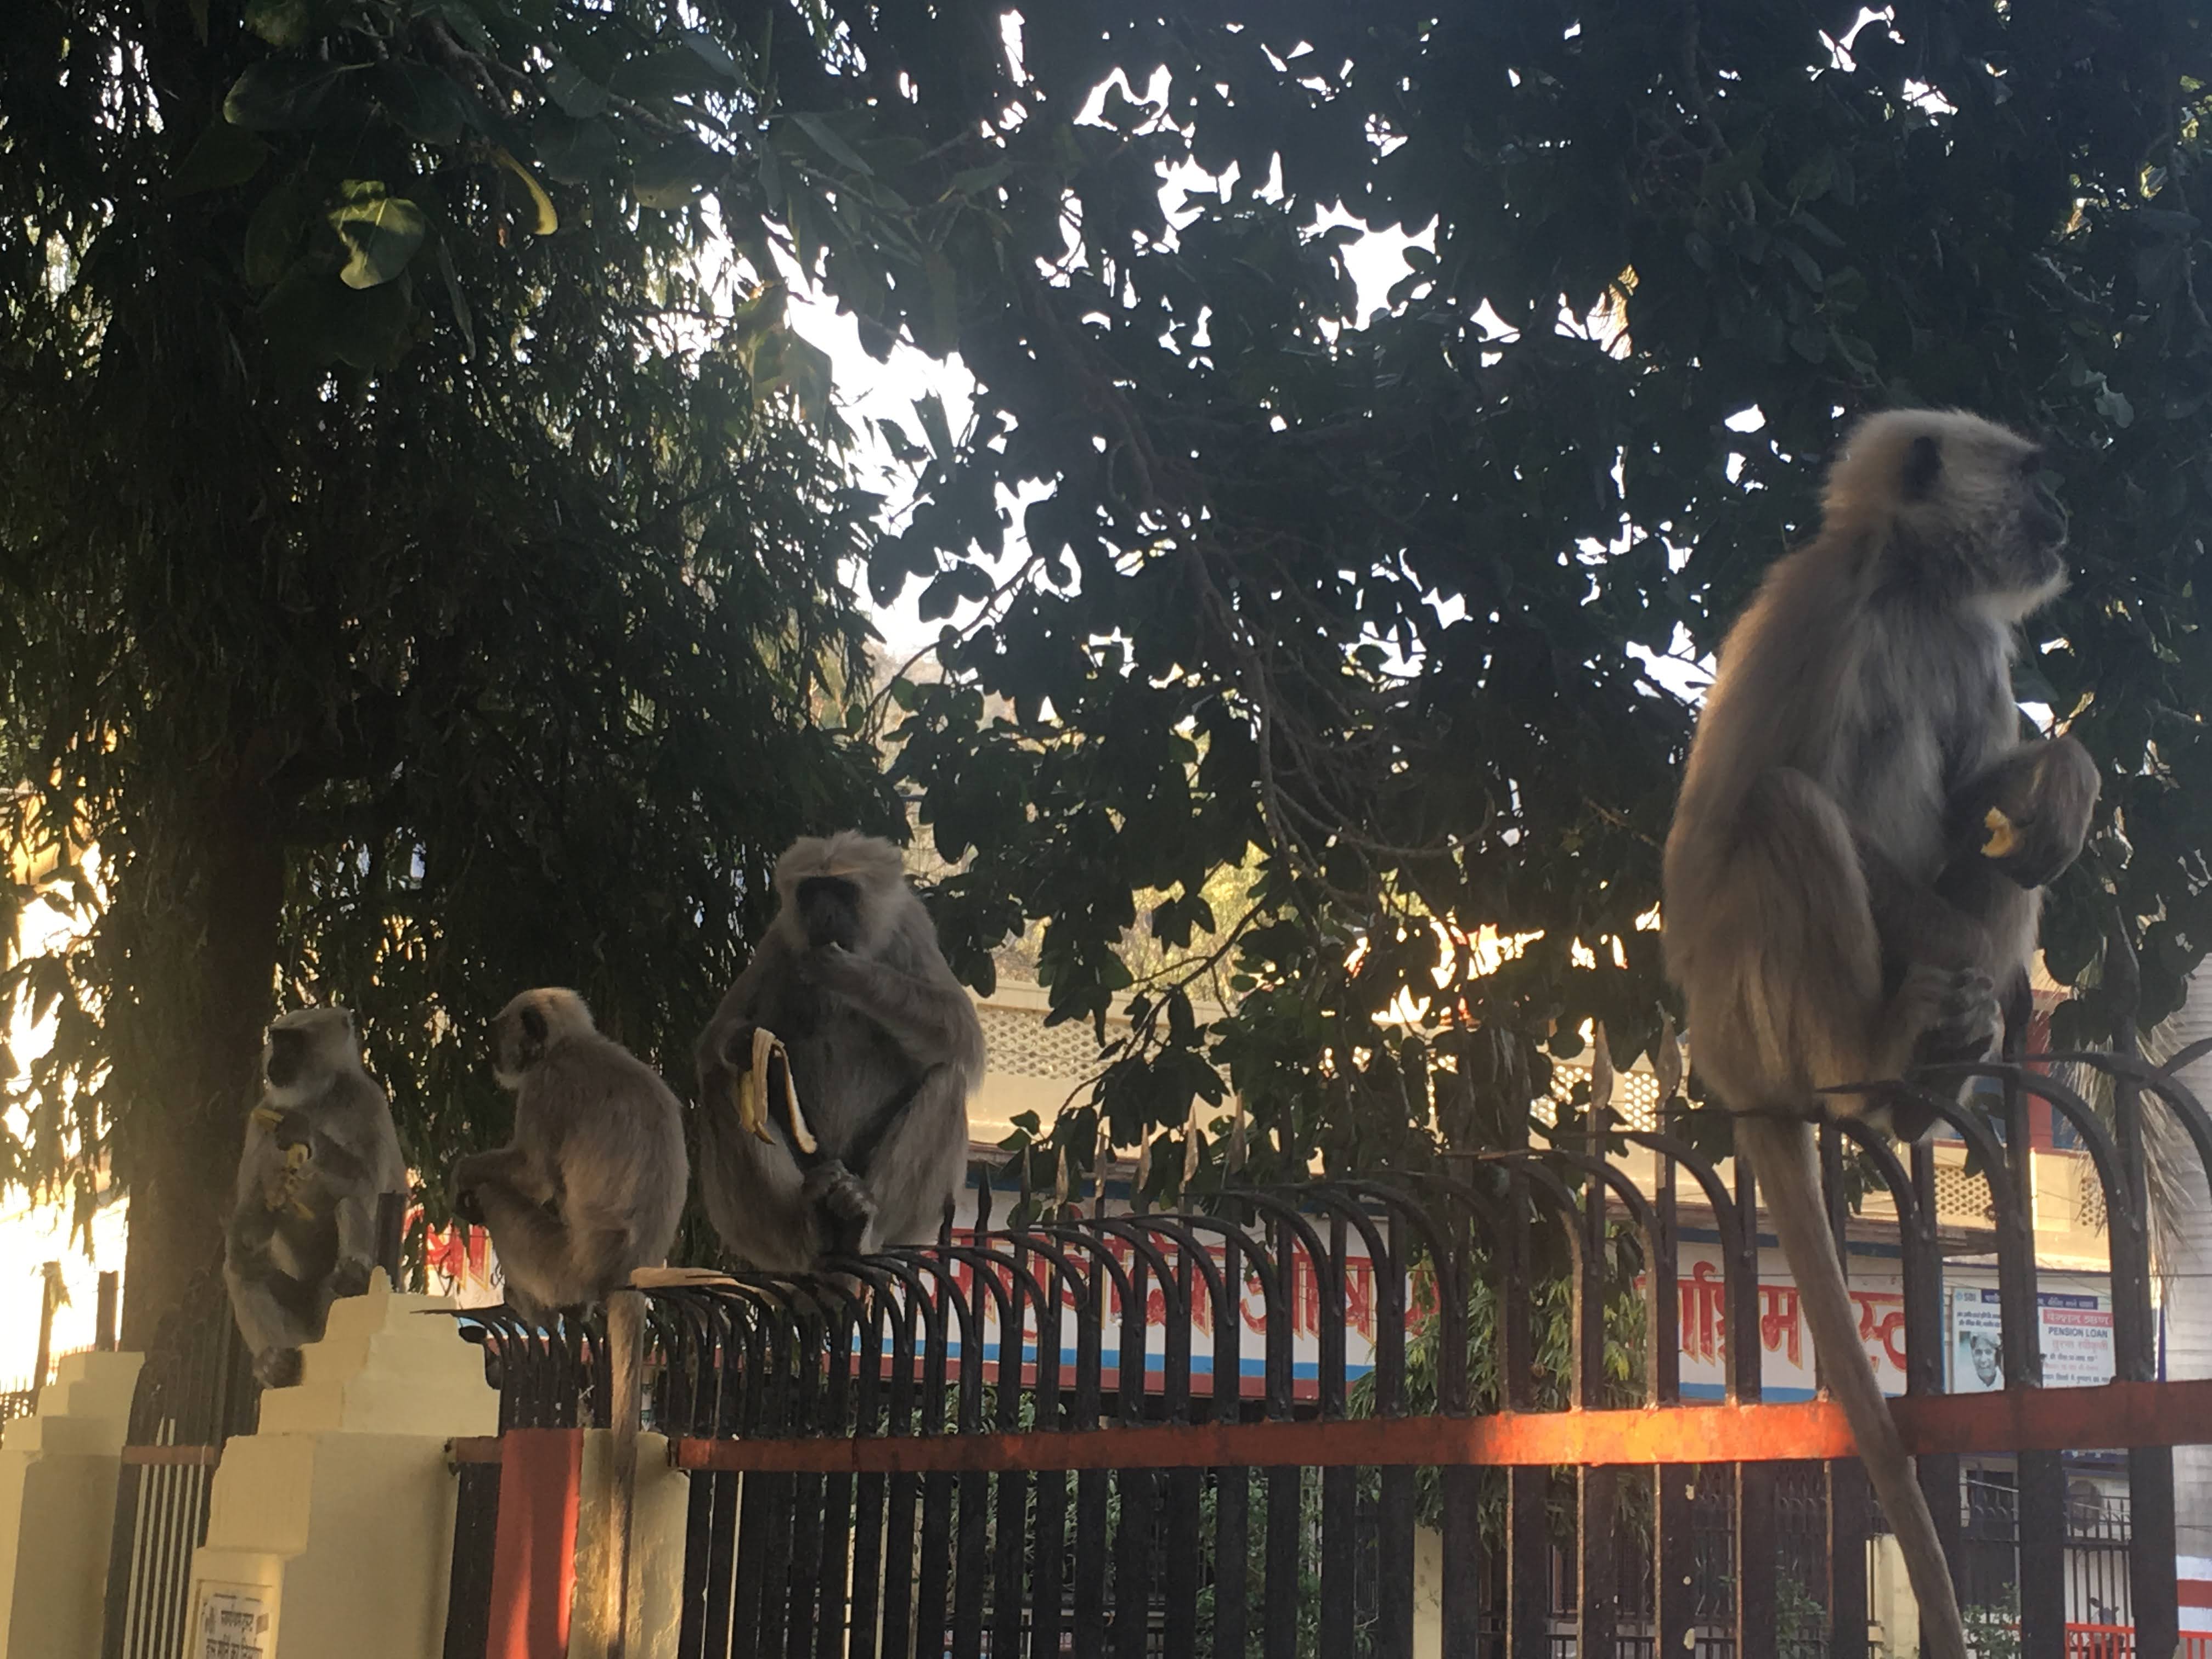 Monkeys on an iron gate- Rishikesh